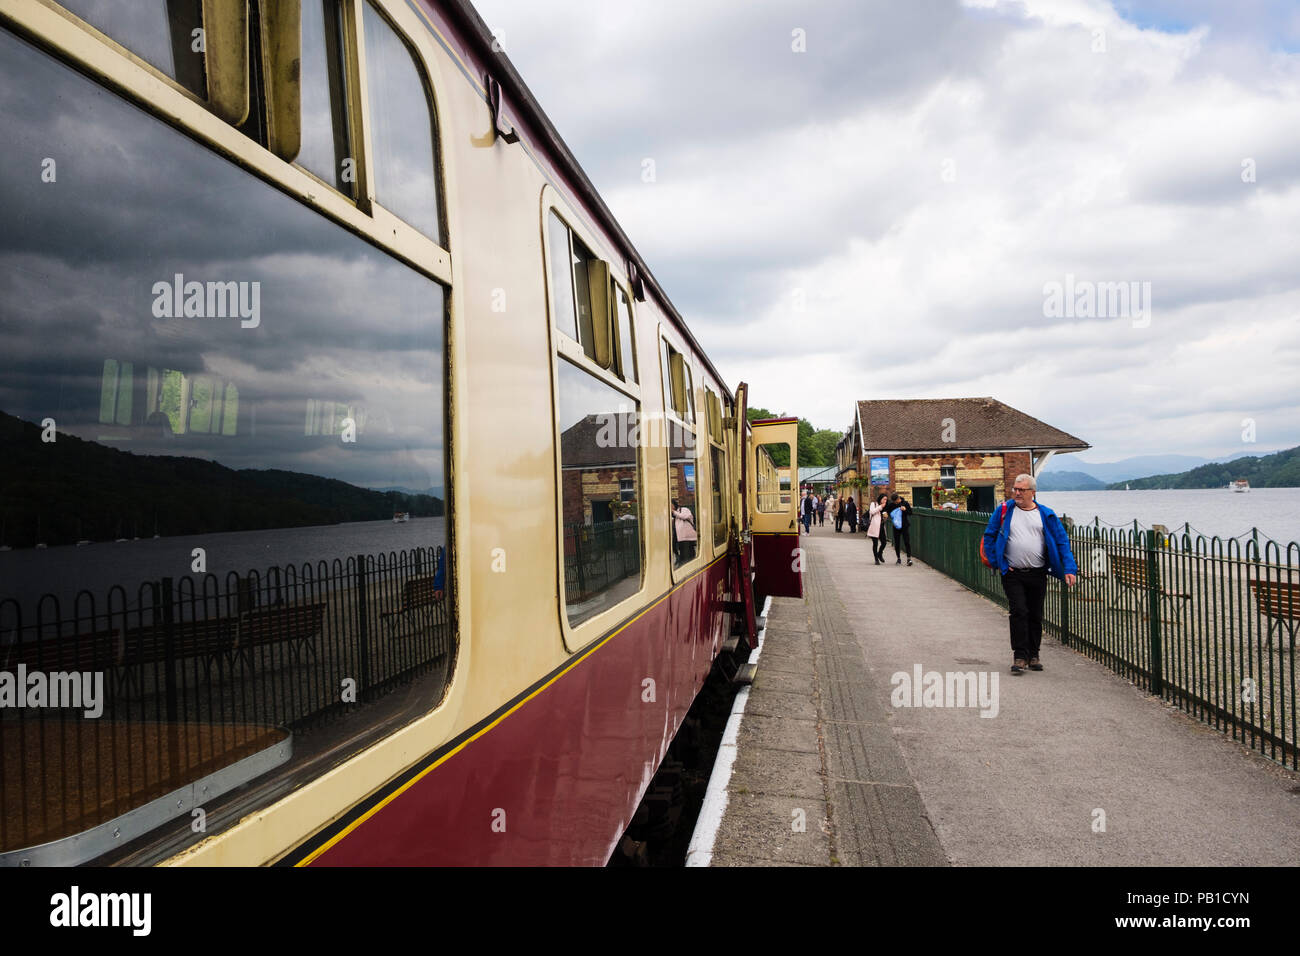 Altmodische Zug in Lakeside und Haverthwaite Steam Railway Station von Windermere im Lake District National Park. Lakeside Cumbria England Großbritannien Stockfoto